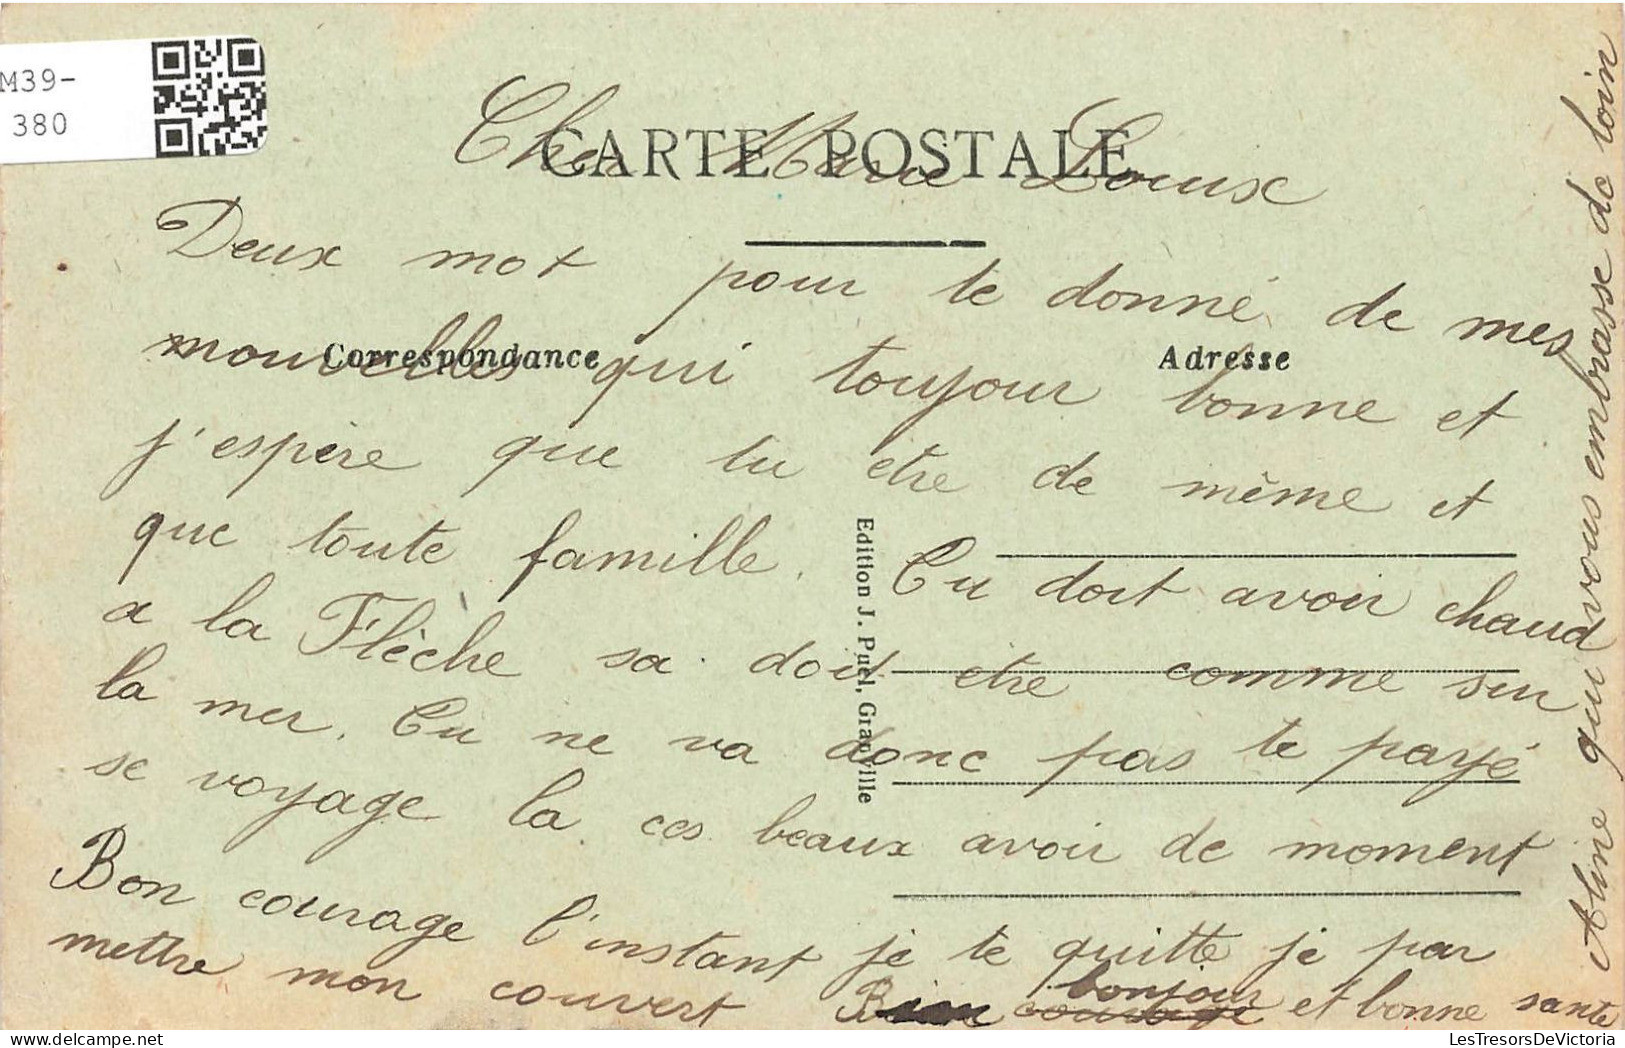 FRANCE - Granville - Vue Générale De La Muraille Du Nord - Colorisé - Carte Postale Ancienne - Granville